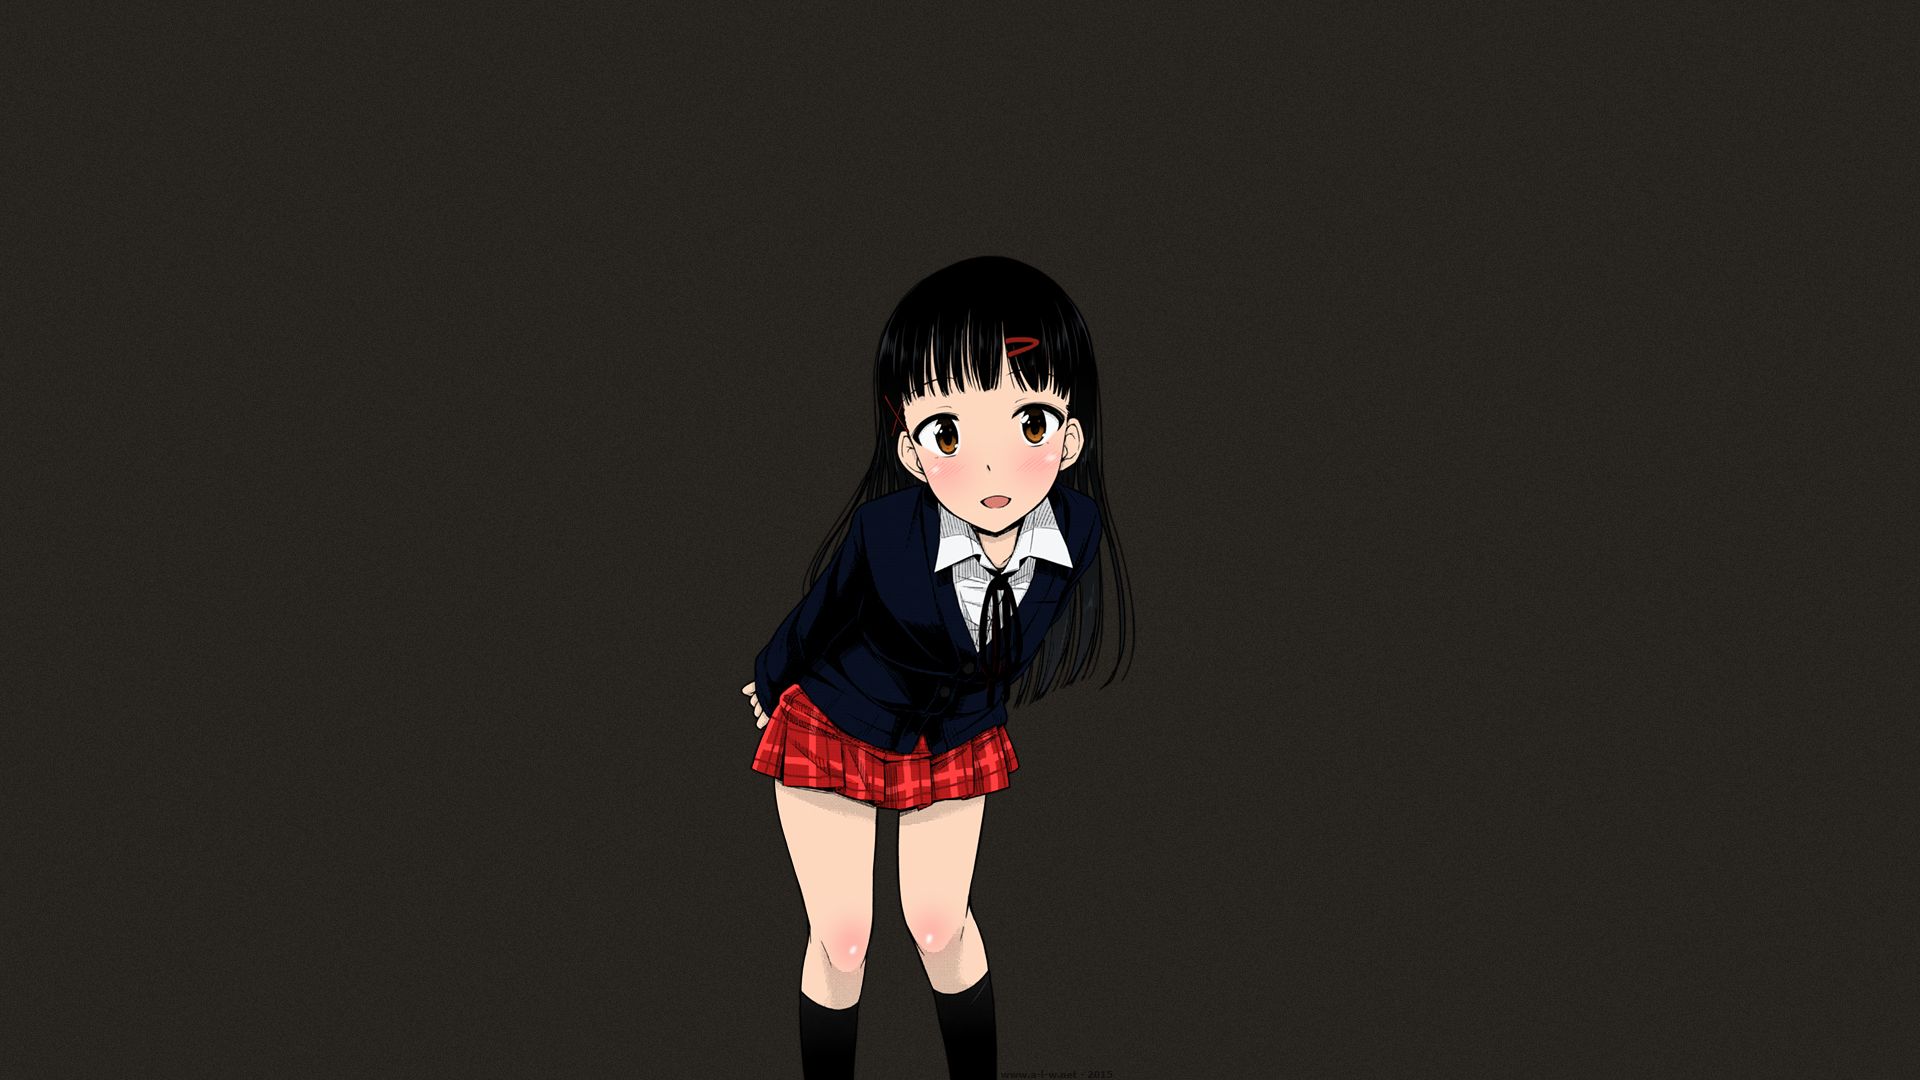 Unknown Anime Girls 7 by Toon4evreDay on DeviantArt